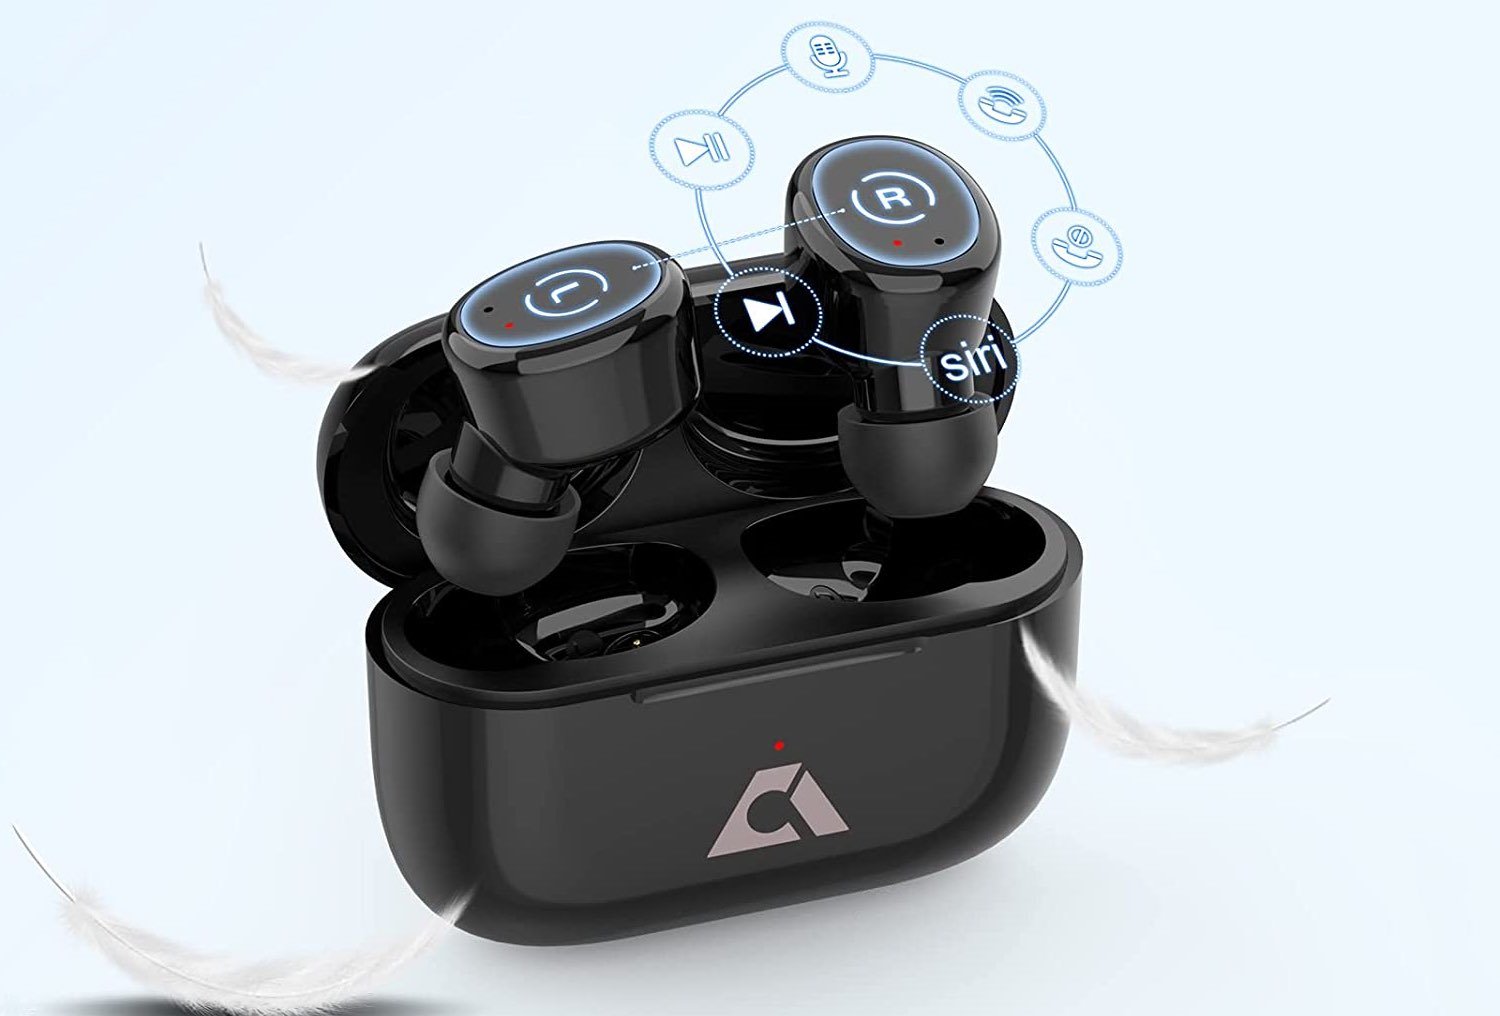 Ankbit E302 True Wireless Earbuds